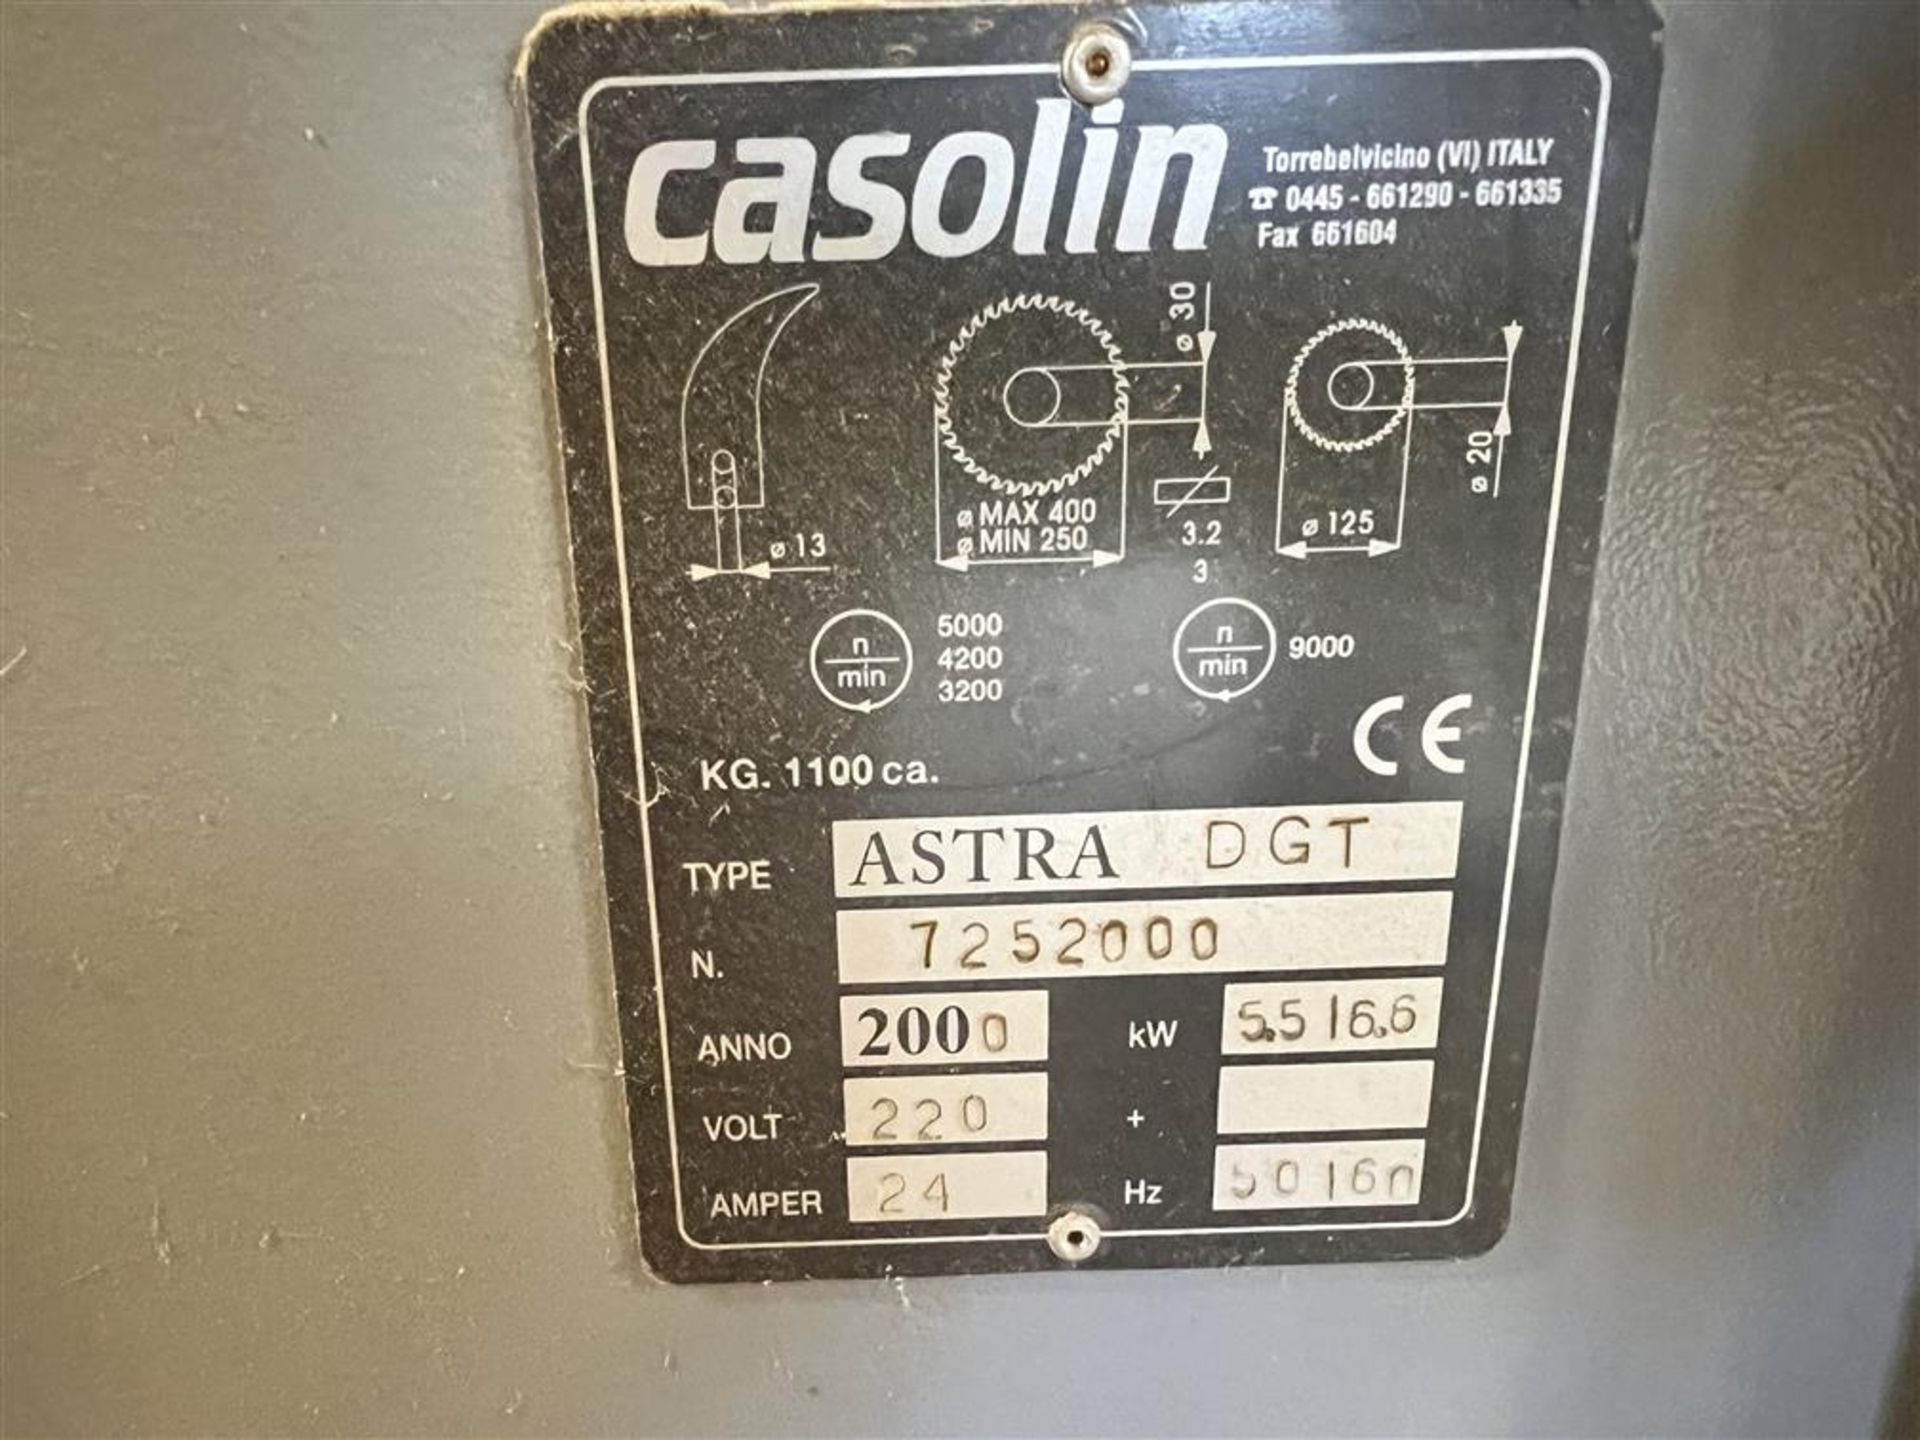 2000 CASOLIN MODEL ASTRA-DGT SLIDING TABLE SAW, 3PH, 220V - Image 6 of 9